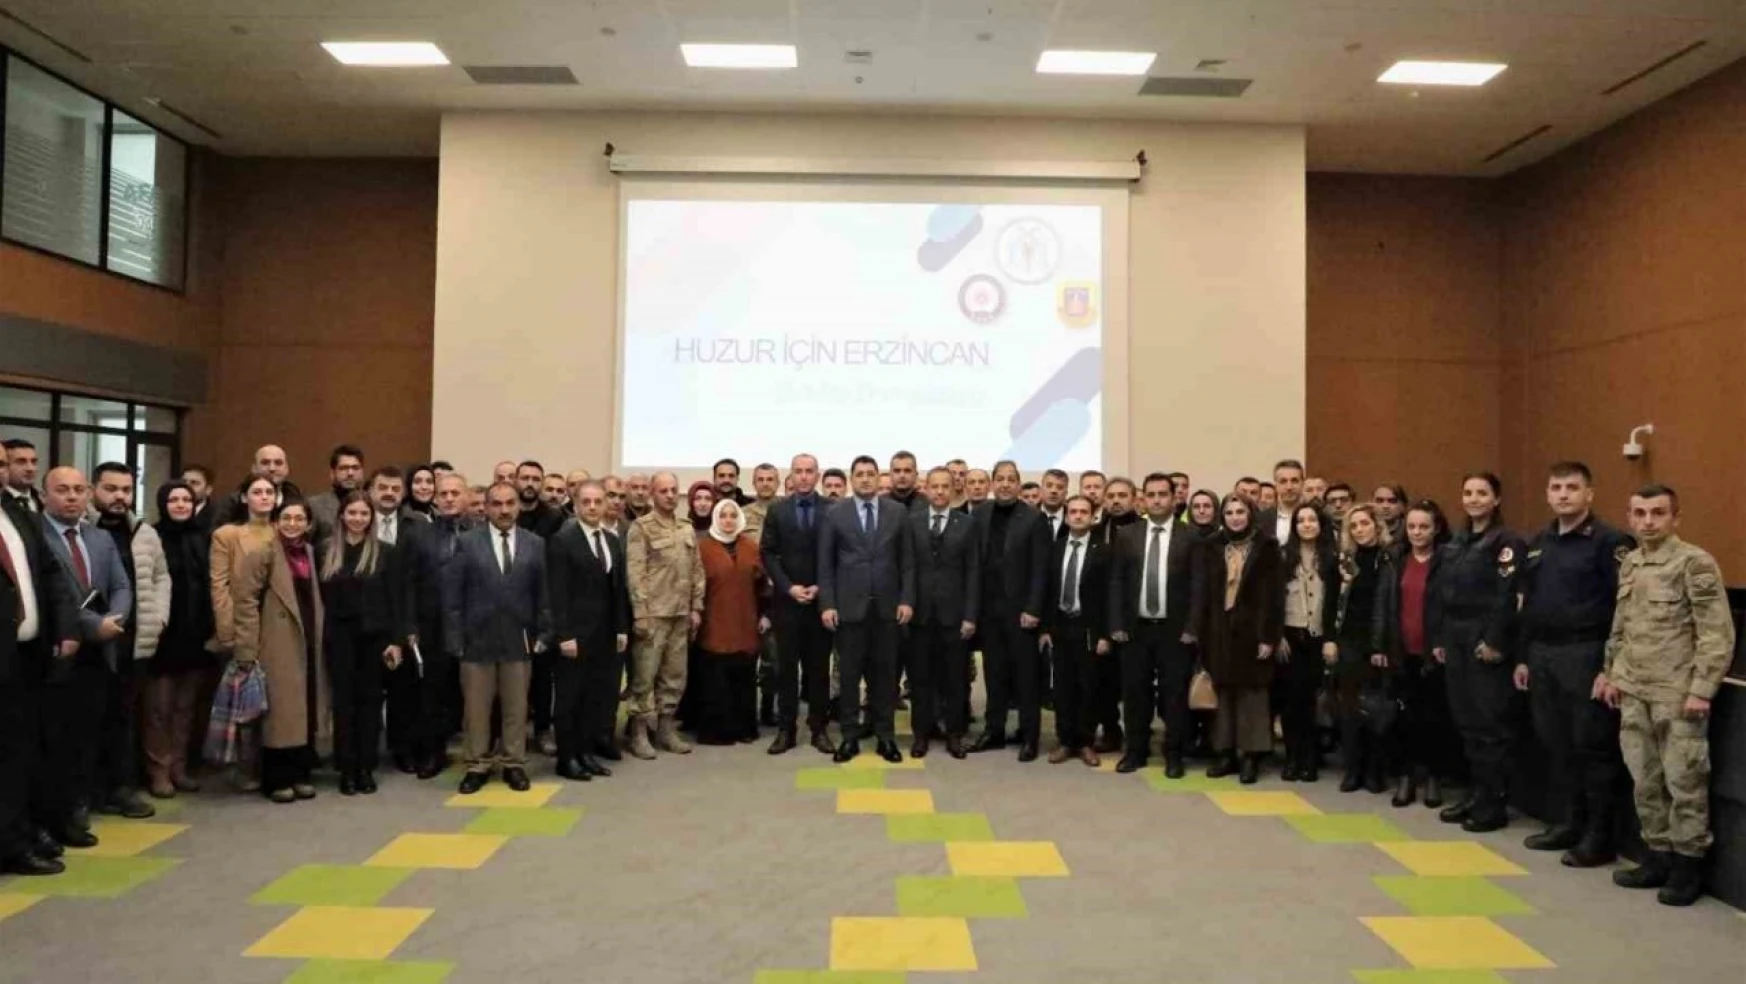 'Huzur İçin Erzincan' projesinin üçüncü toplantısı yapıldı